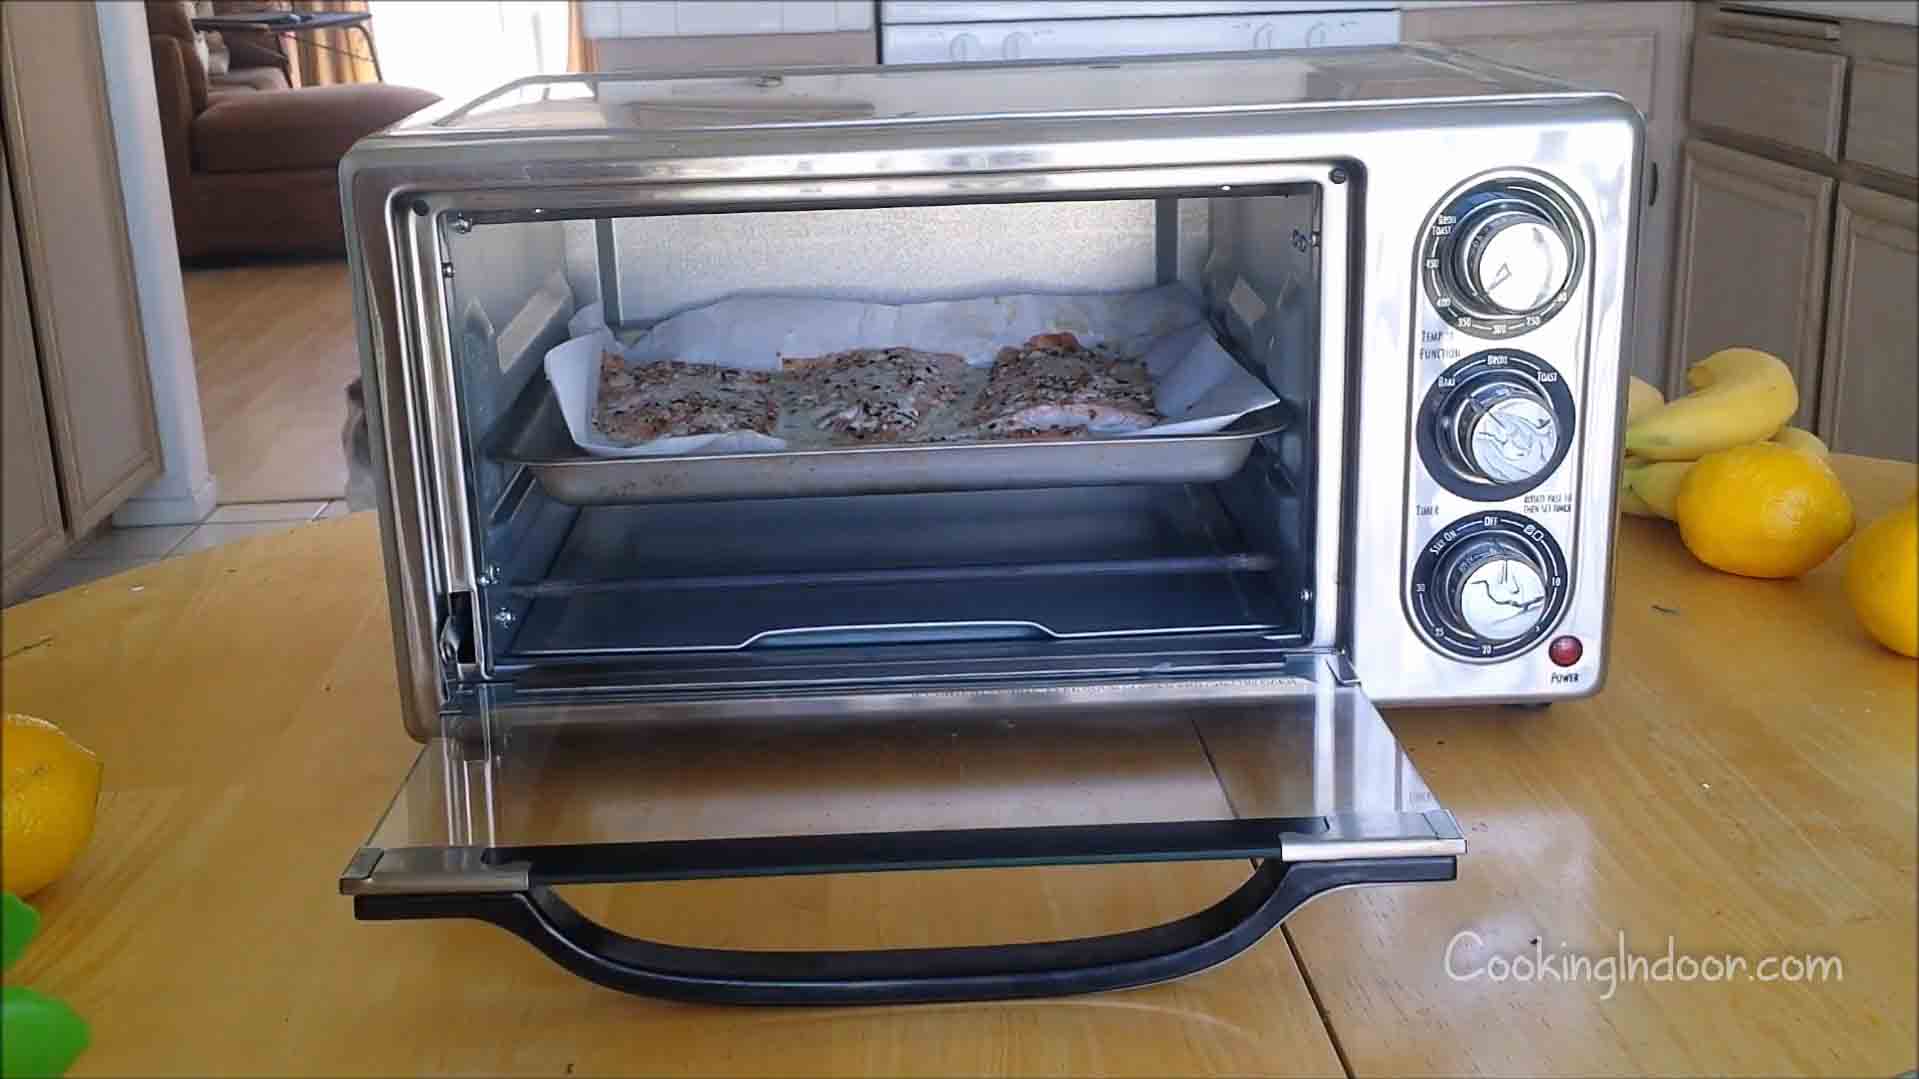 https://cookingindoor.com/wp-content/uploads/Best-small-toaster-oven.jpg